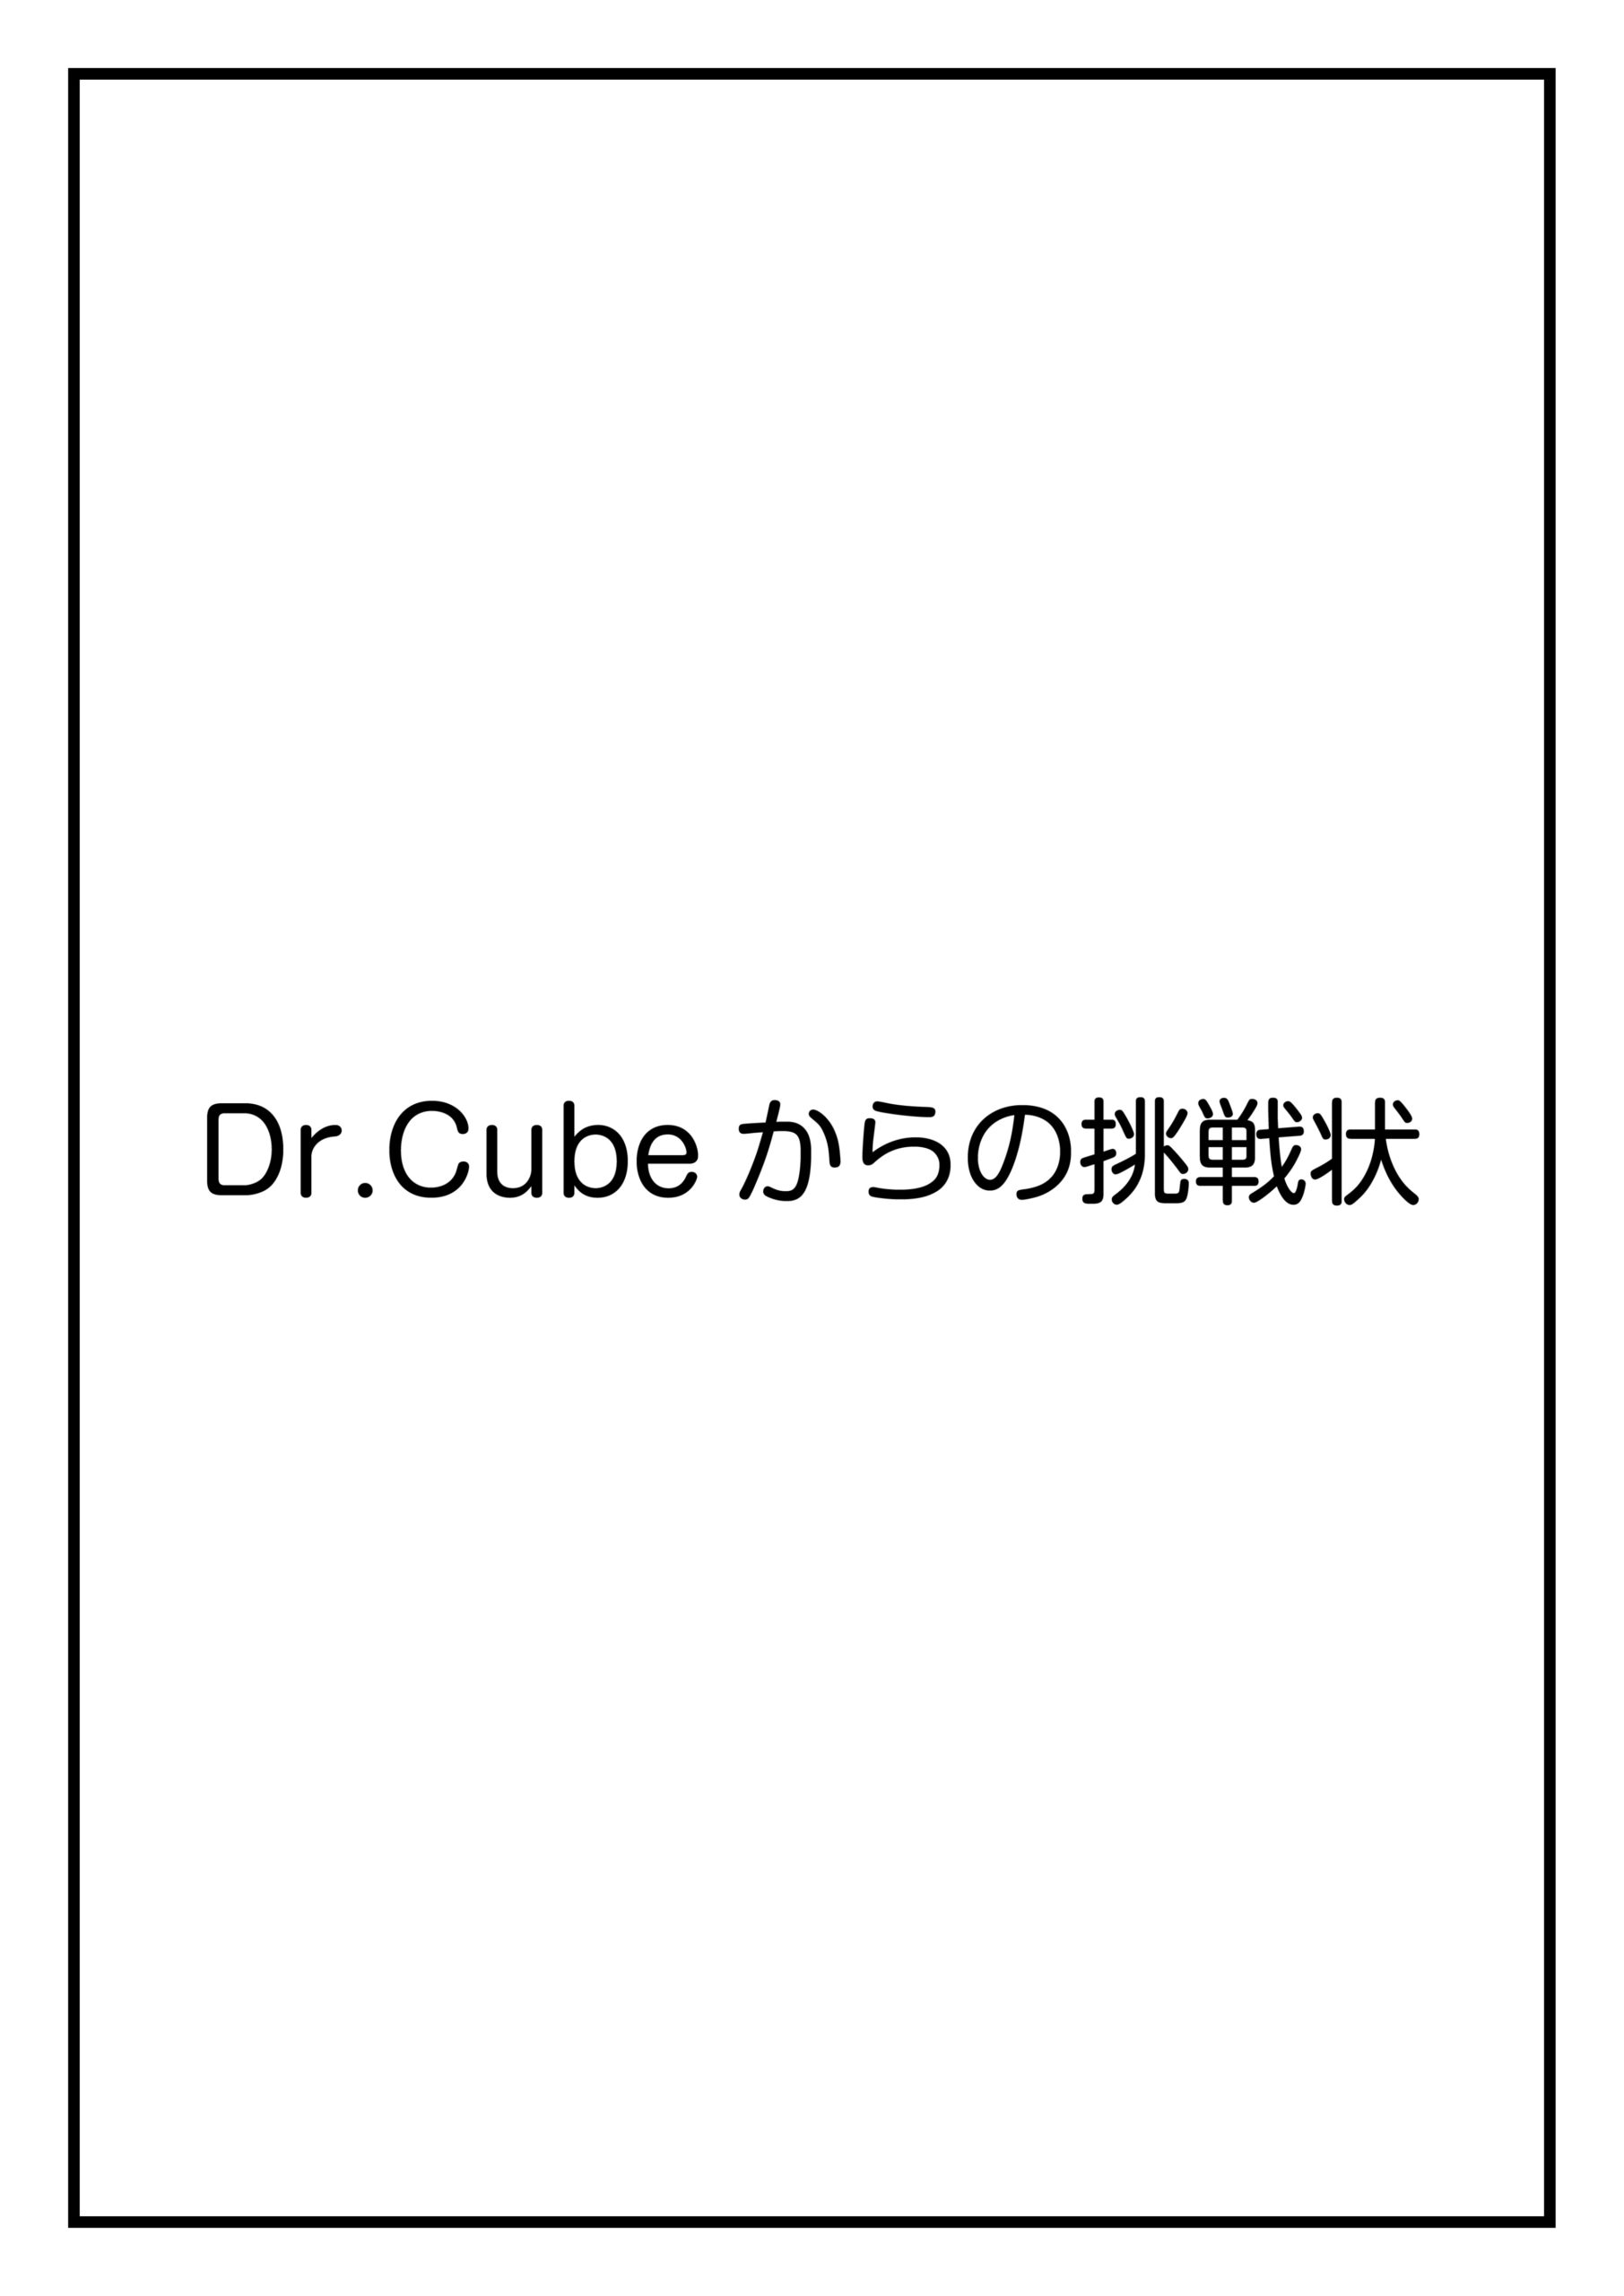 CubeFactory ✕ テクニコテクニカ『Dr.Cubeからの挑戦状シリーズ』体験型謎解きゲーム【東京公演】